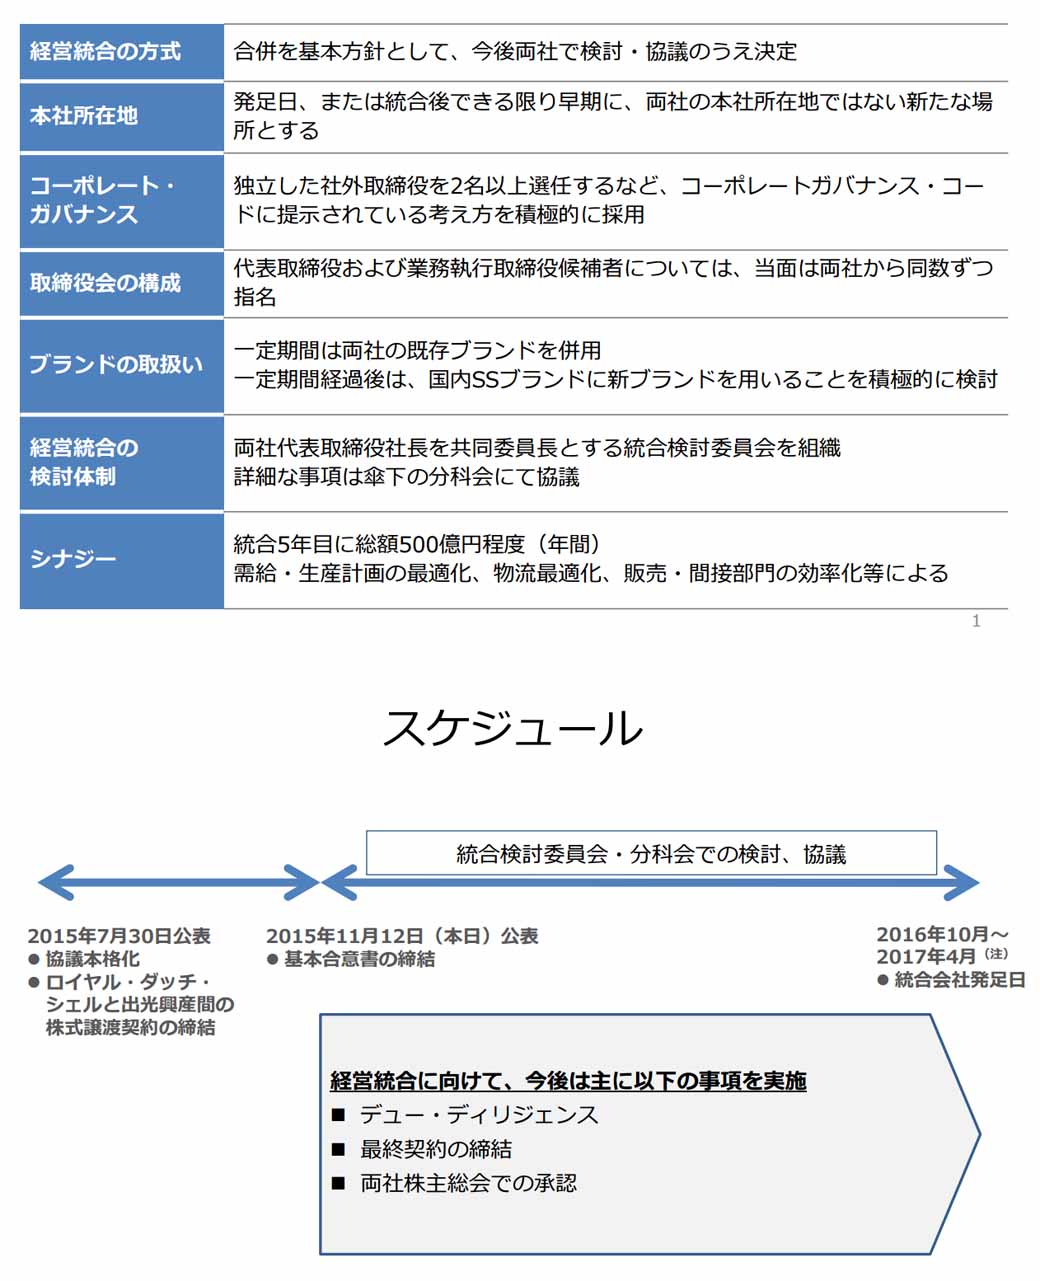 showa-shell-sekiyu-kk-and-idemitsu-kosan-basic-agreement-concluded-with-management-integration20151112-3